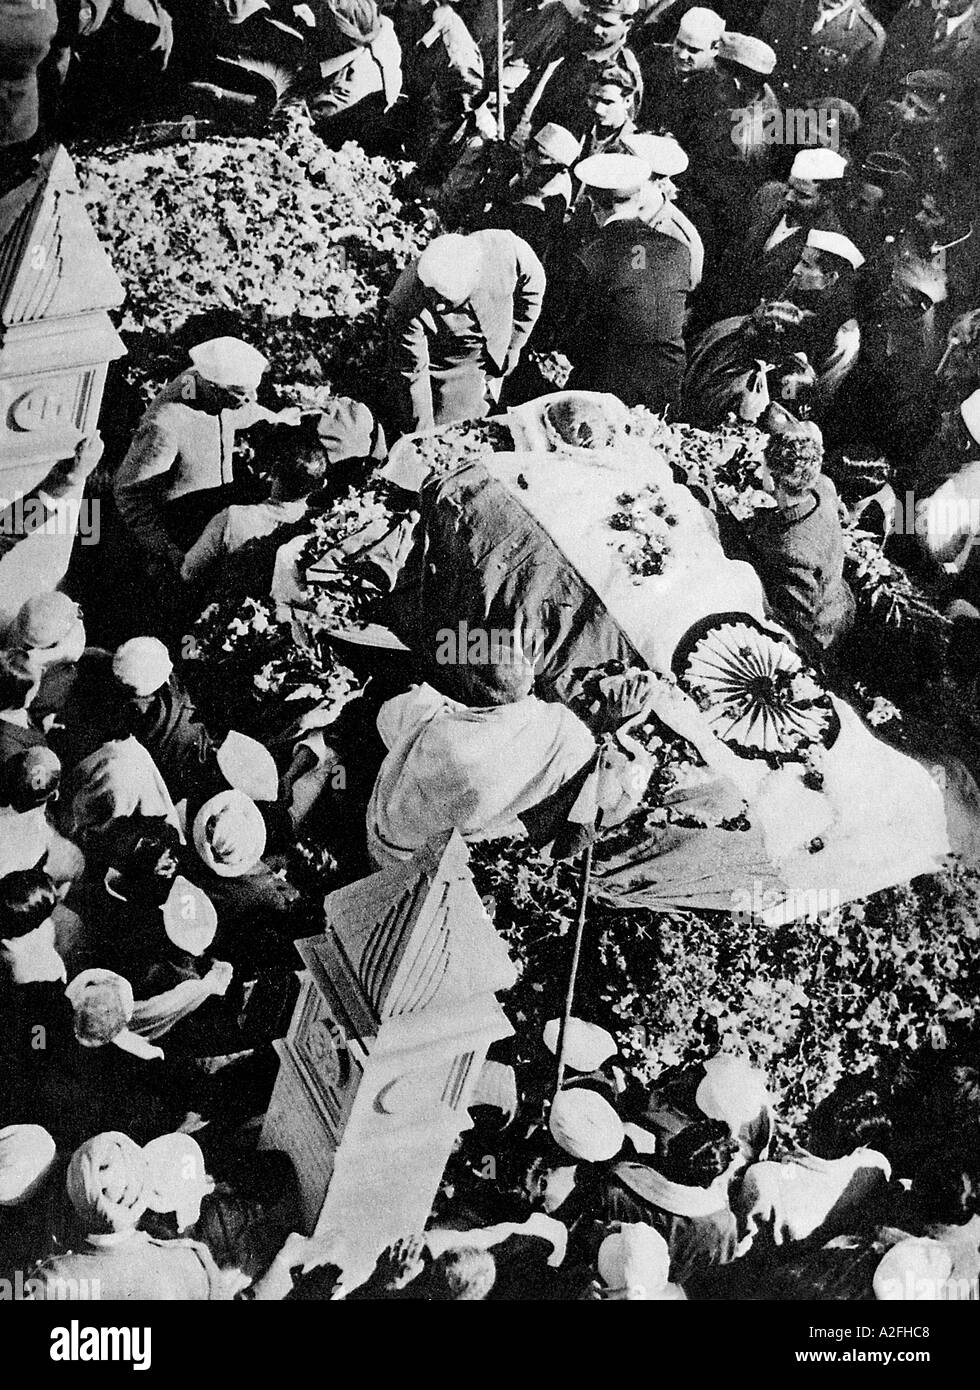 Jawaharlal Nehru junto a Mahatma Gandhi cadáver envuelto en bandera india, procesión funeraria, Delhi, India, 1948, imagen antigua vintage de 1900s Foto de stock